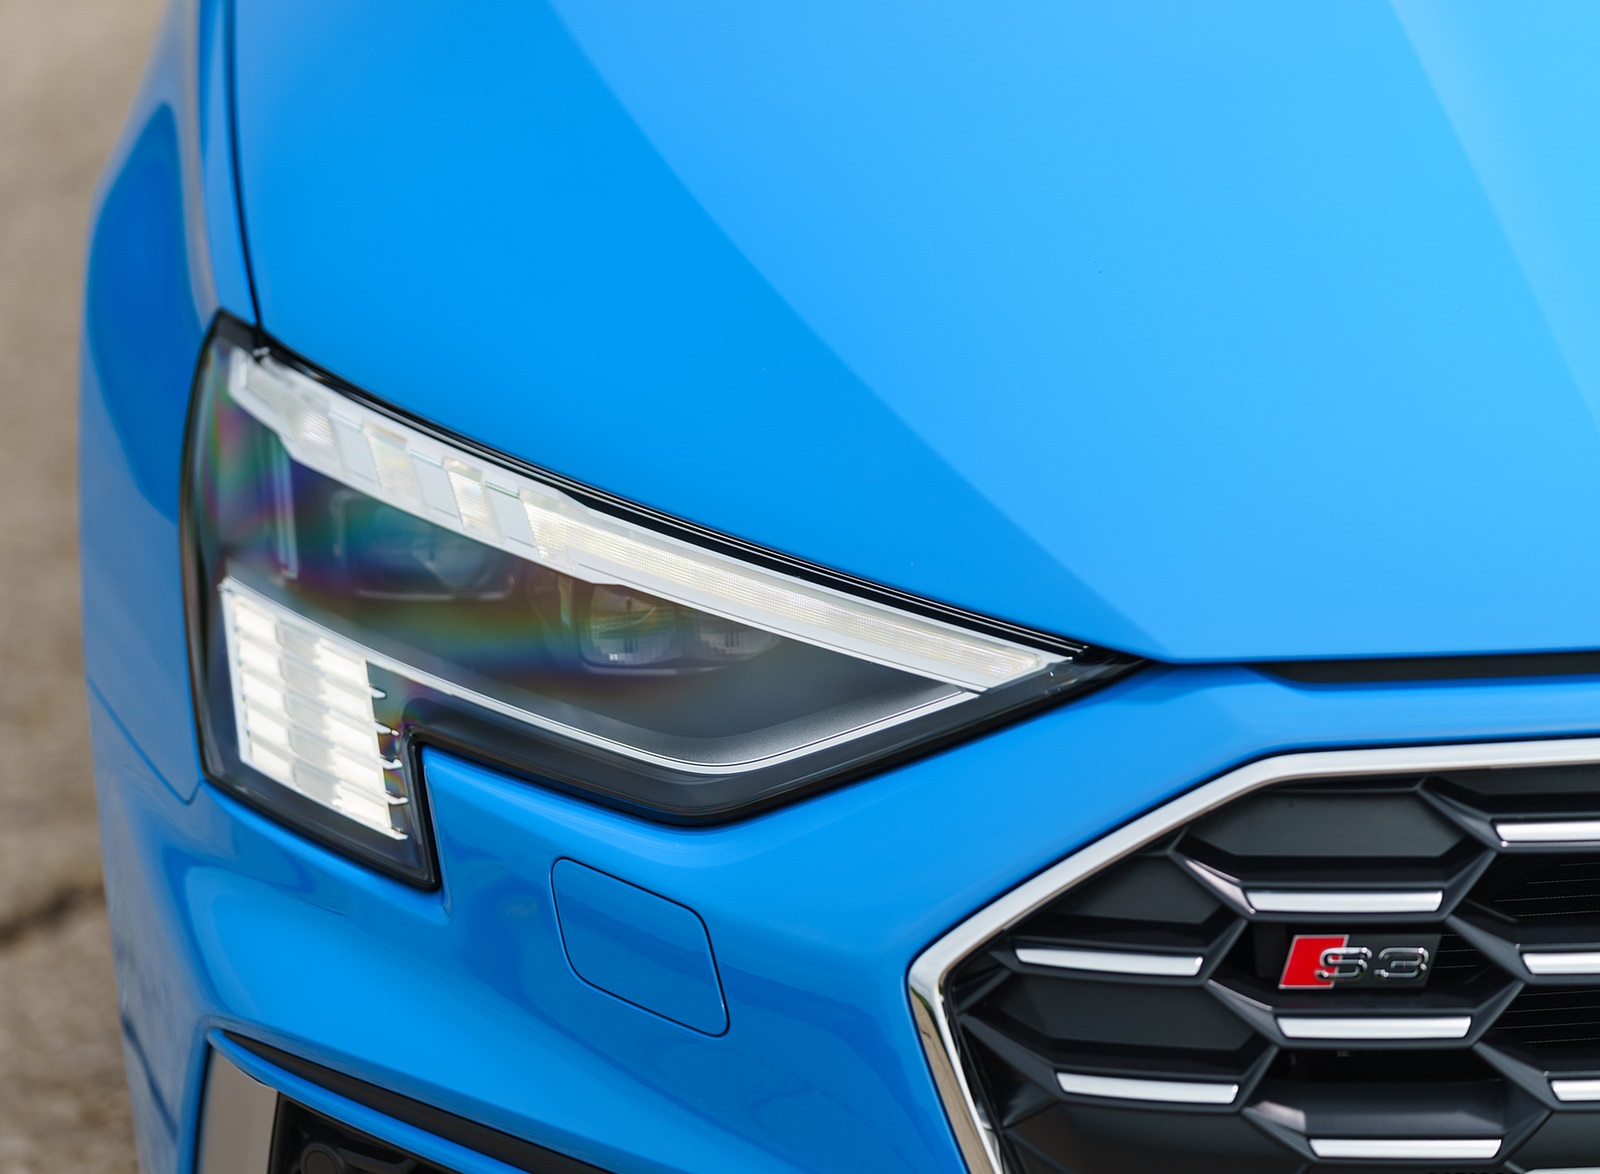 2021 Audi S3 (UK-Spec) Headlight Wallpapers #43 of 110